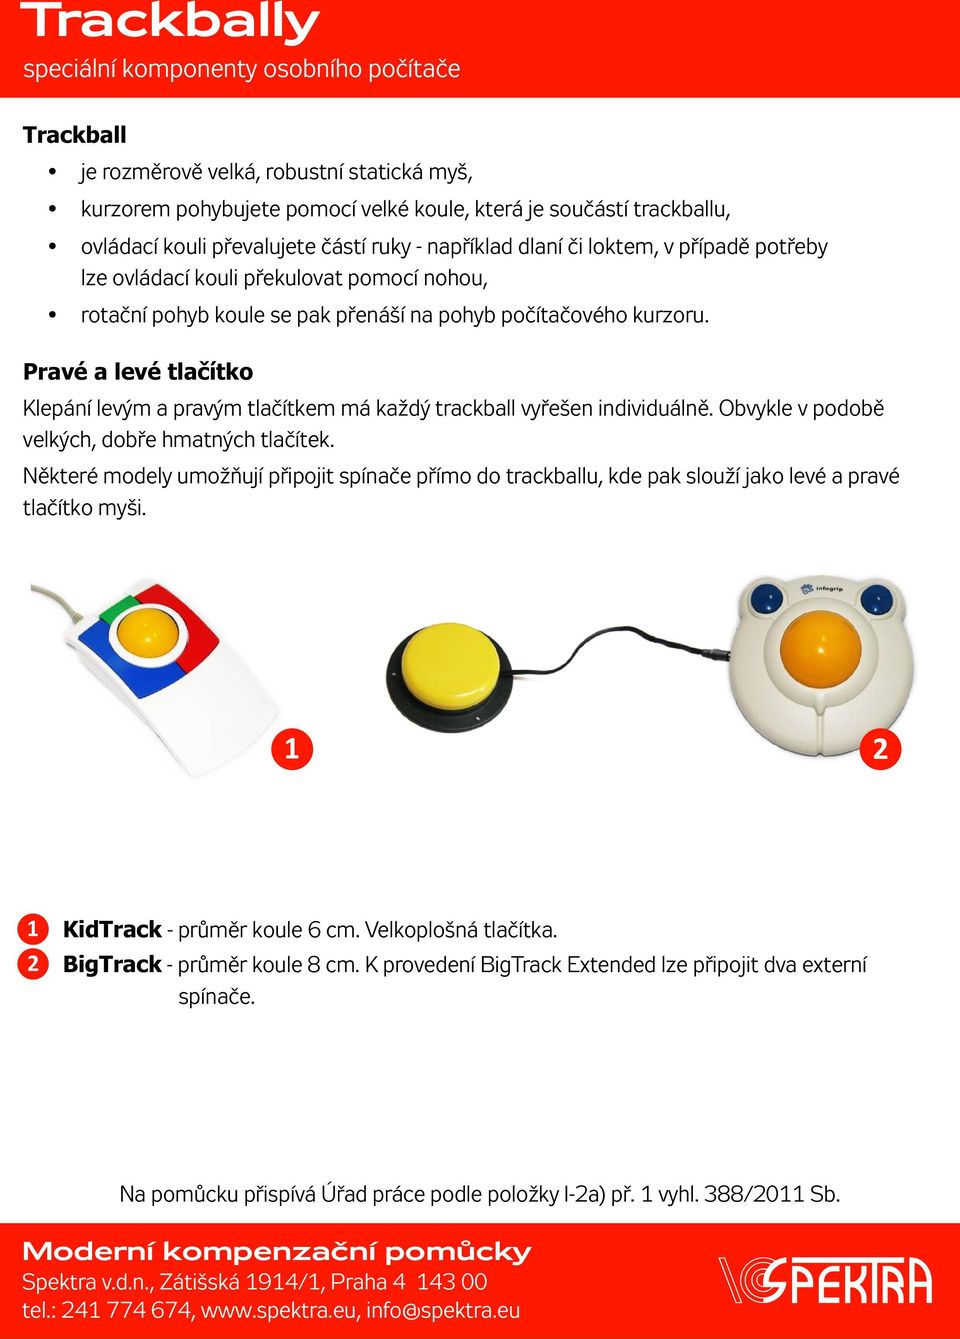 Pravé a levé tlačítko Klepání levým a pravým tlačítkem má každý trackball vyřešen individuálně. Obvykle v podobě velkých, dobře hmatných tlačítek.